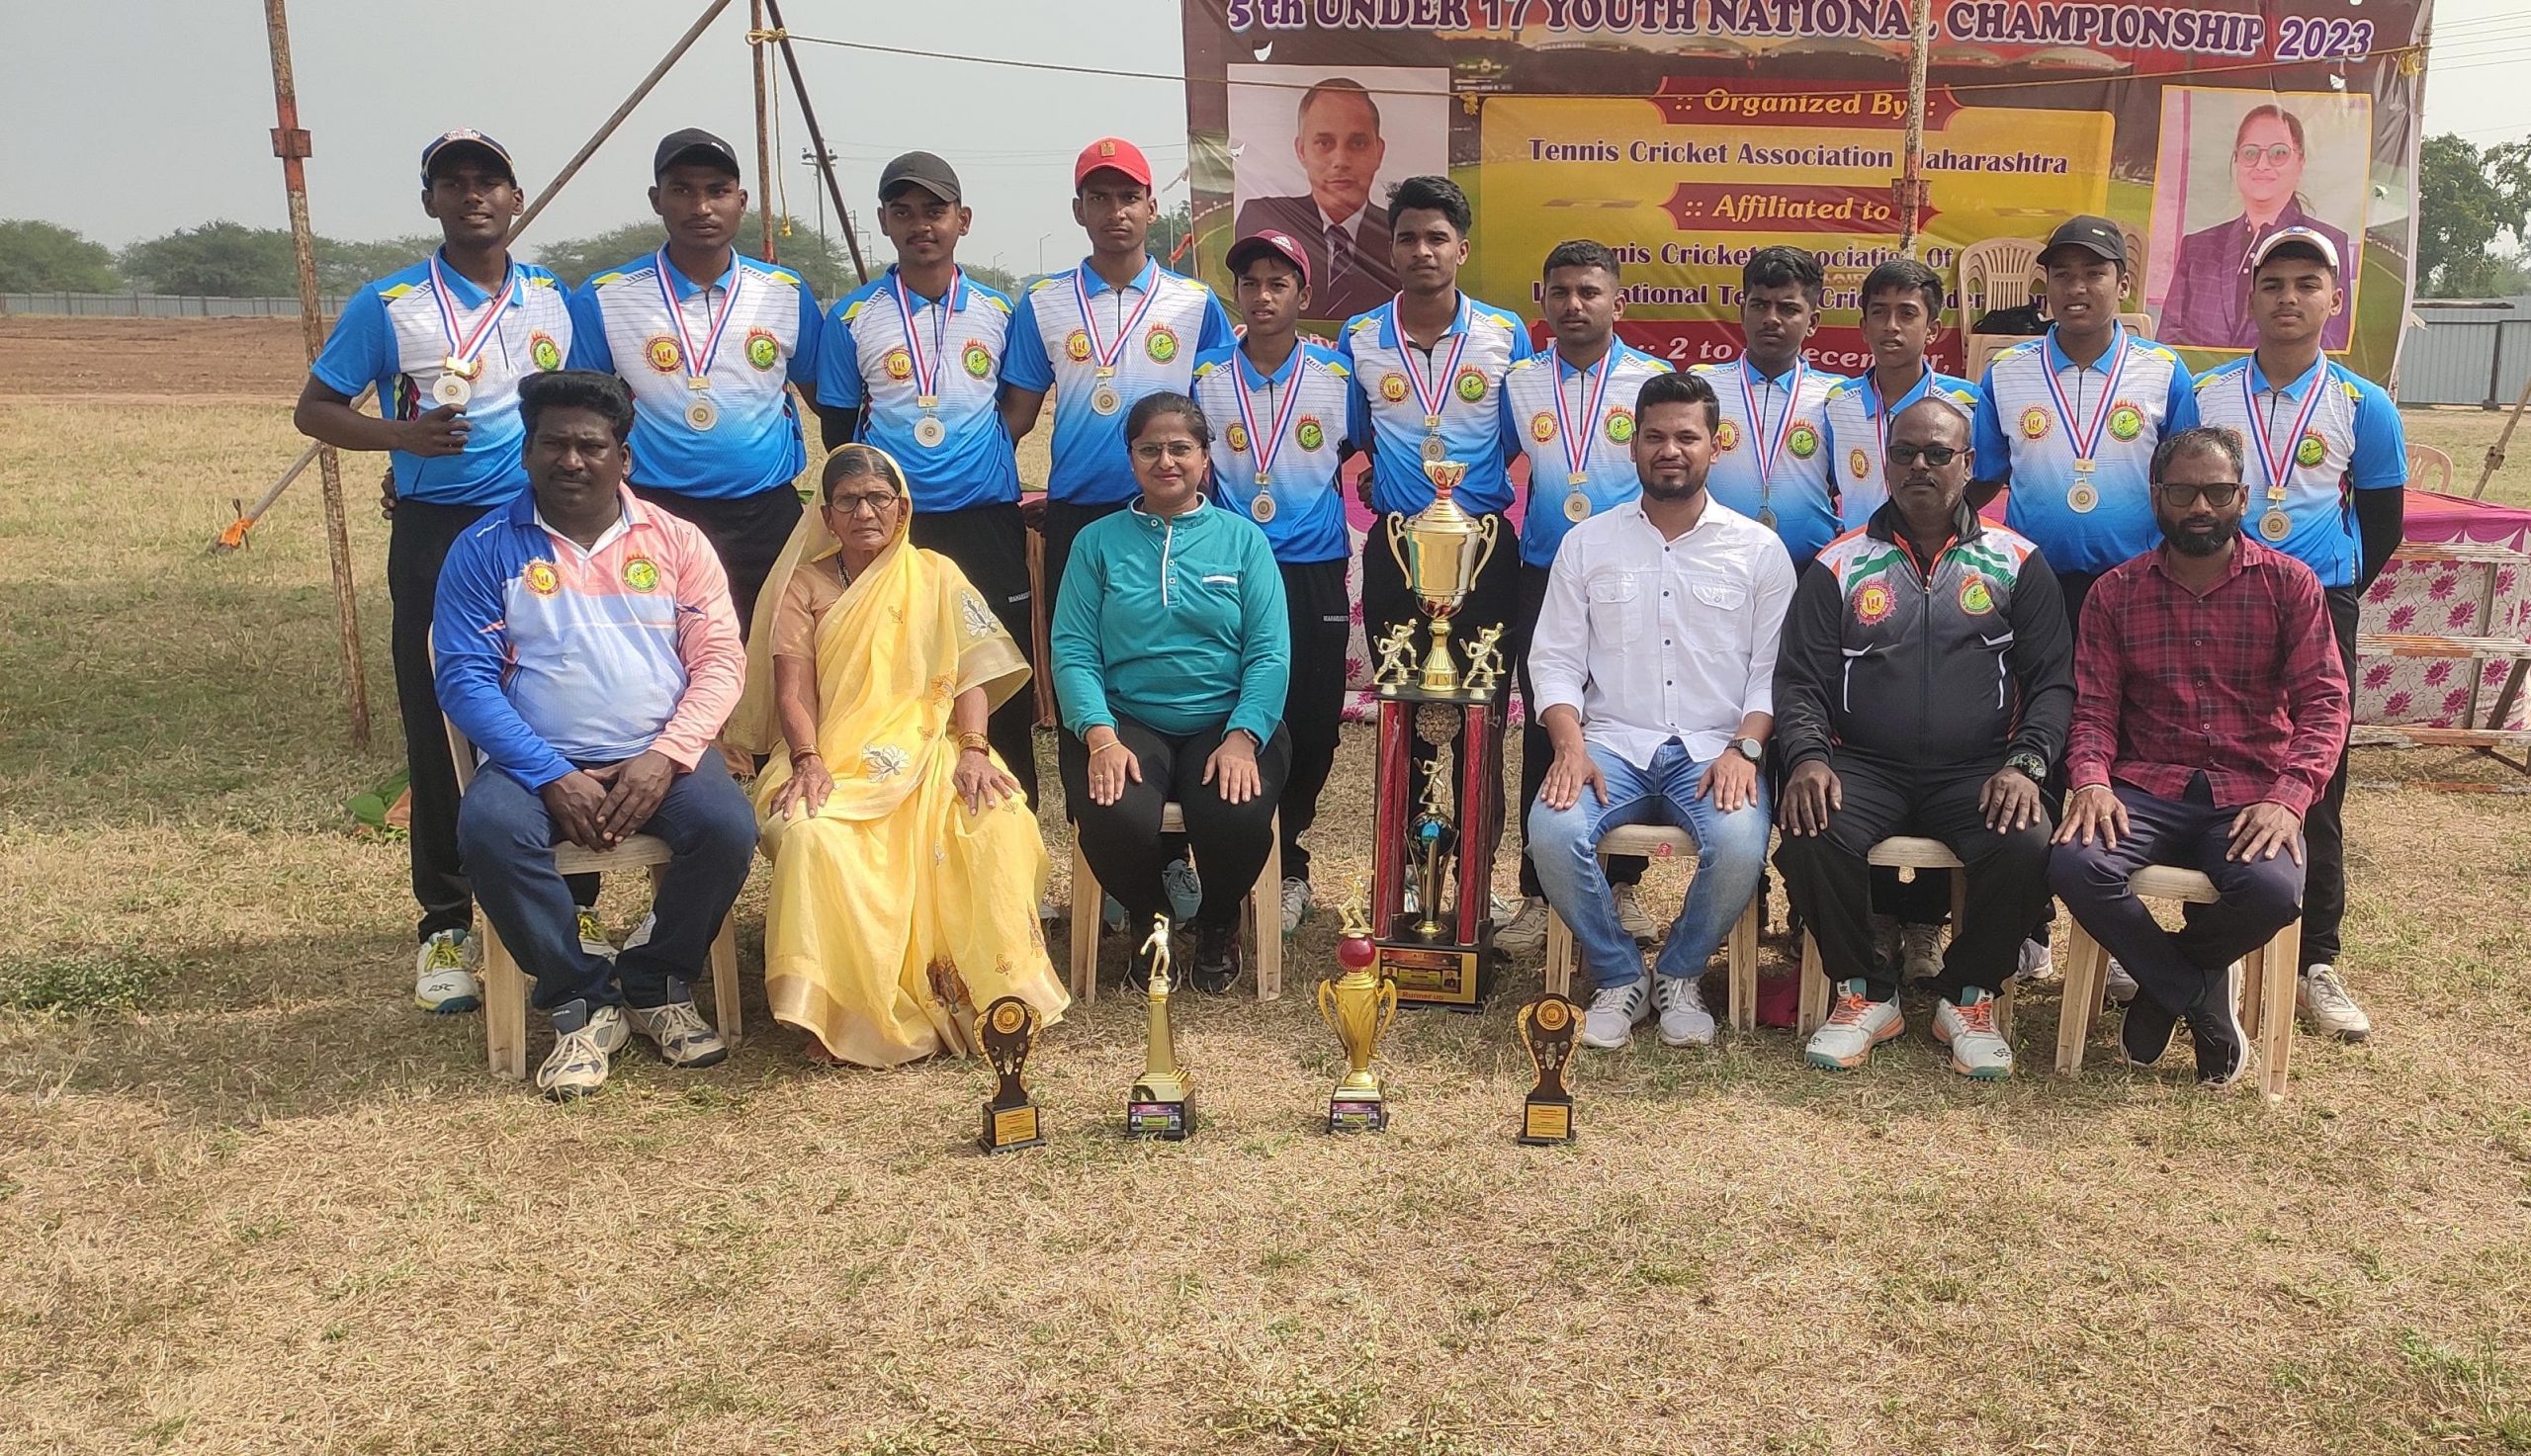 राष्ट्रीय टेनिस क्रिकेट स्पर्धेमध्ये गोवा संघाला प्रथम क्रमांक व महाराष्ट्र संघ उपविजेता